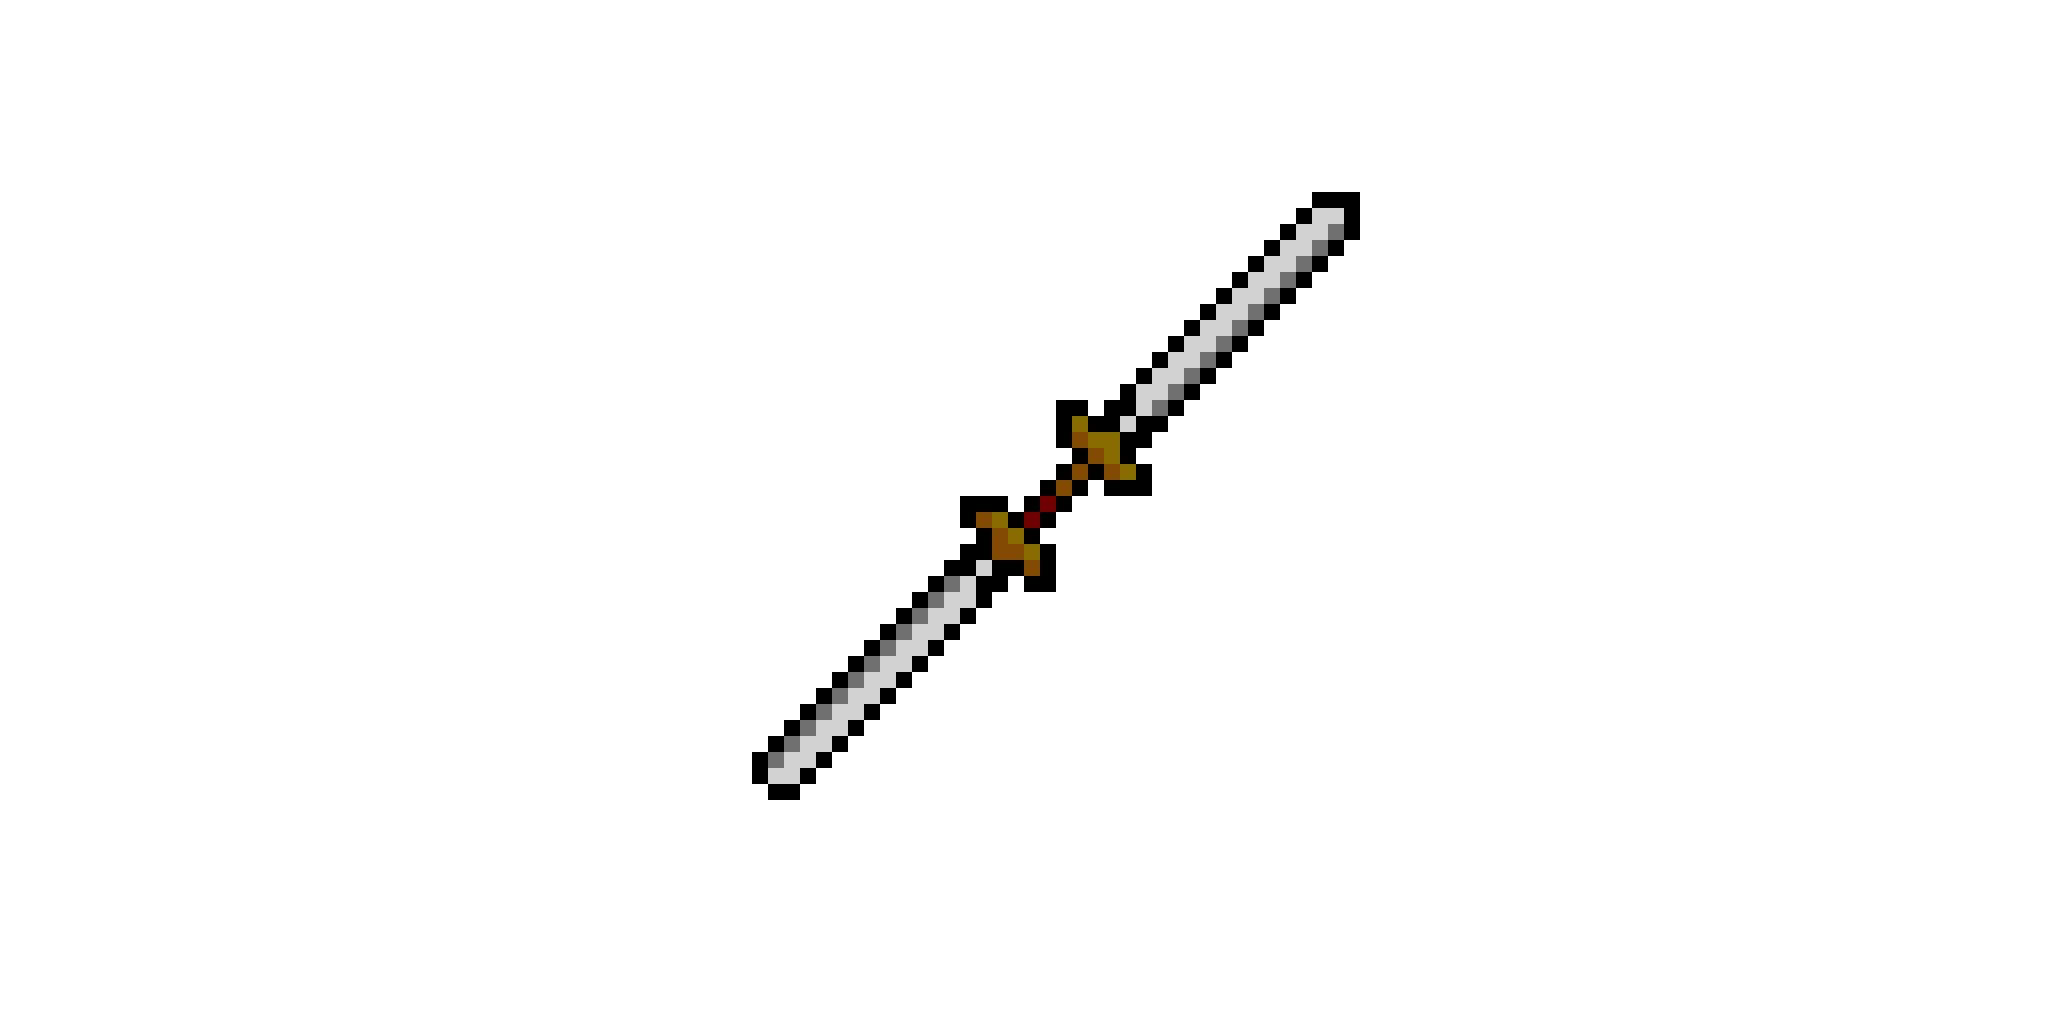 Double-edged sword